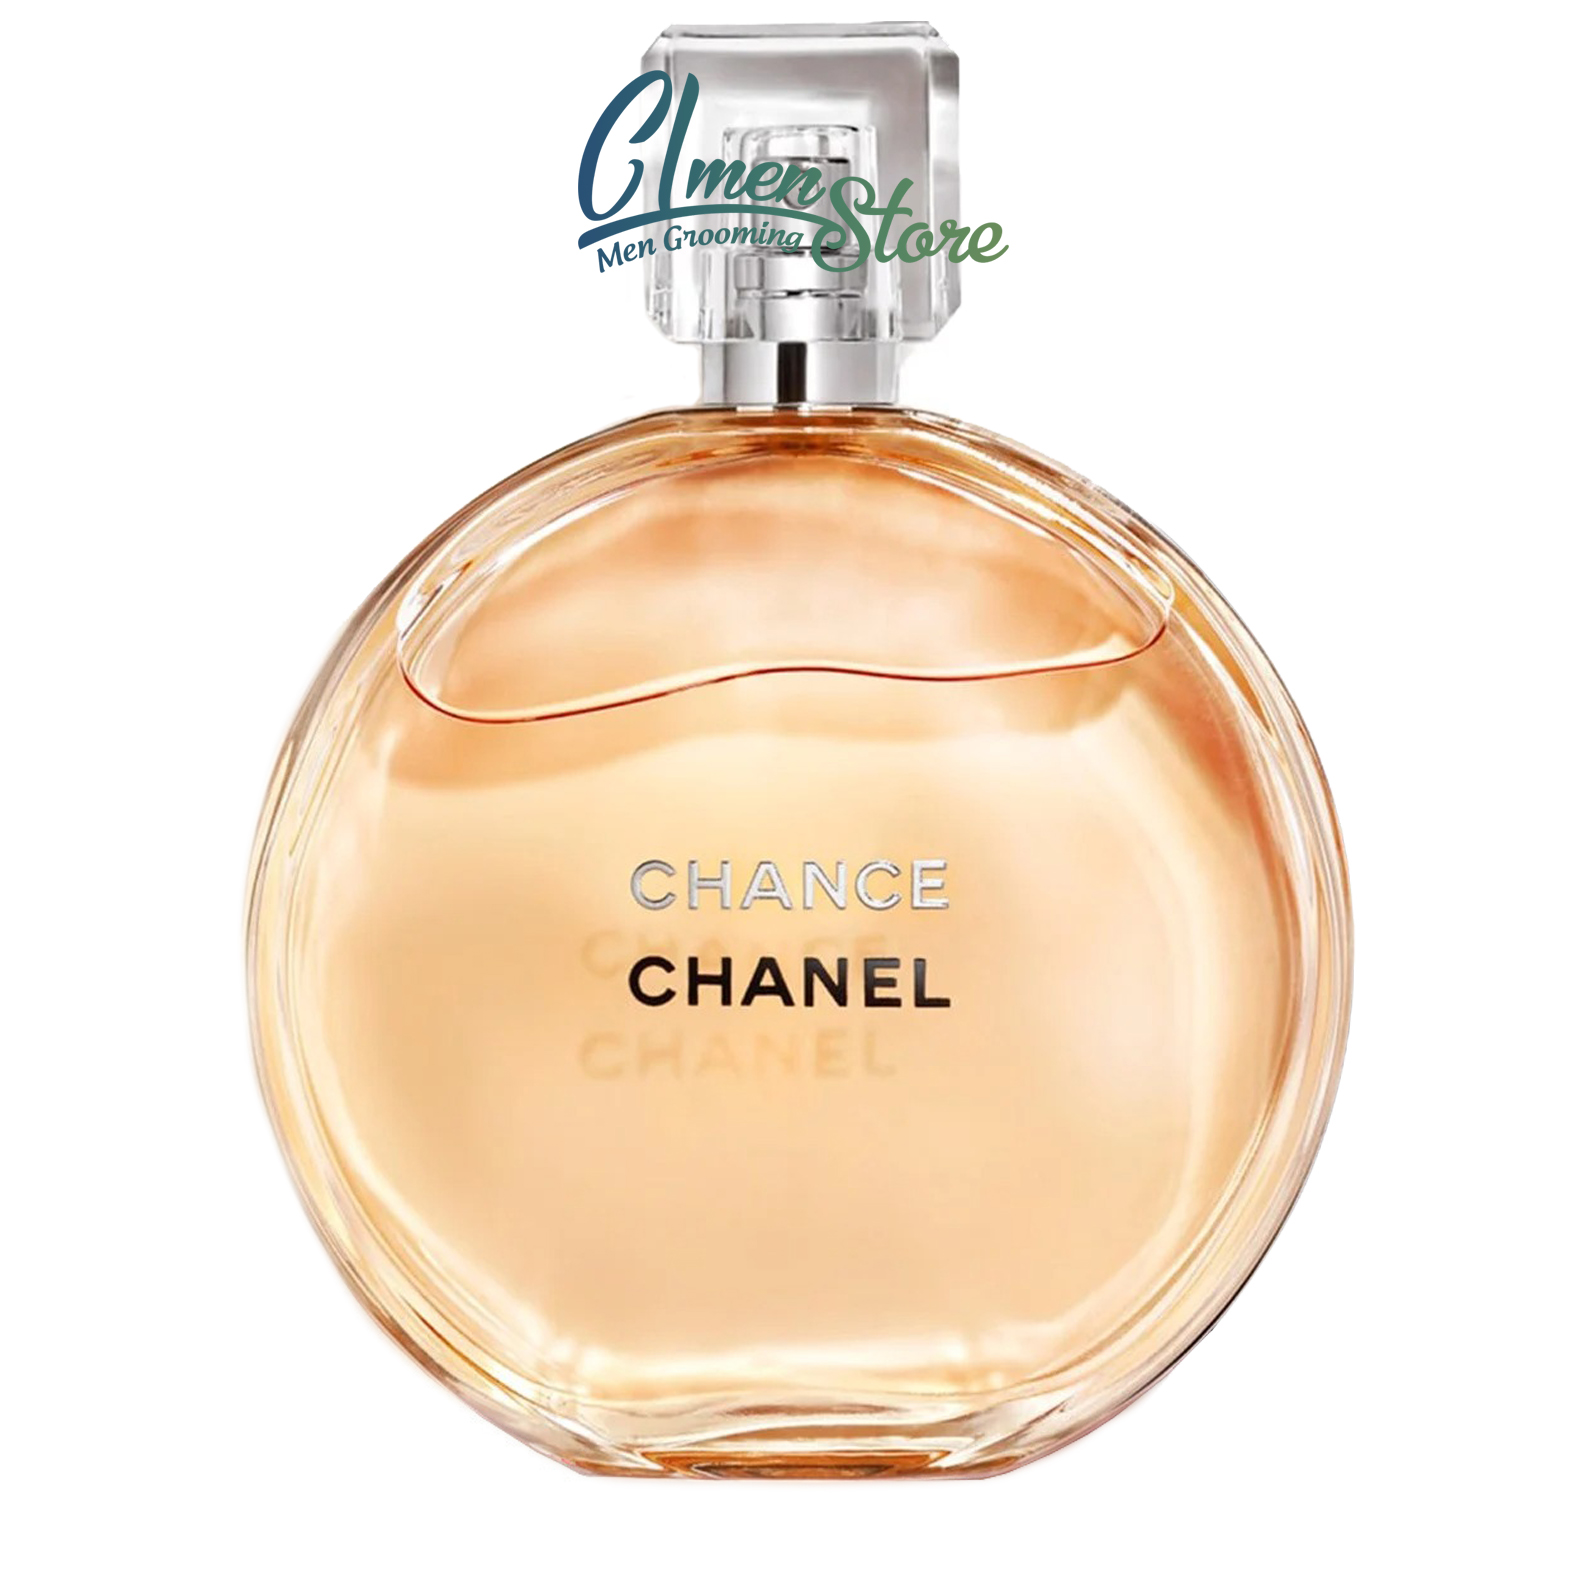 Nước hoa Chance Chanel Eau de Toilette | CL Men's Store